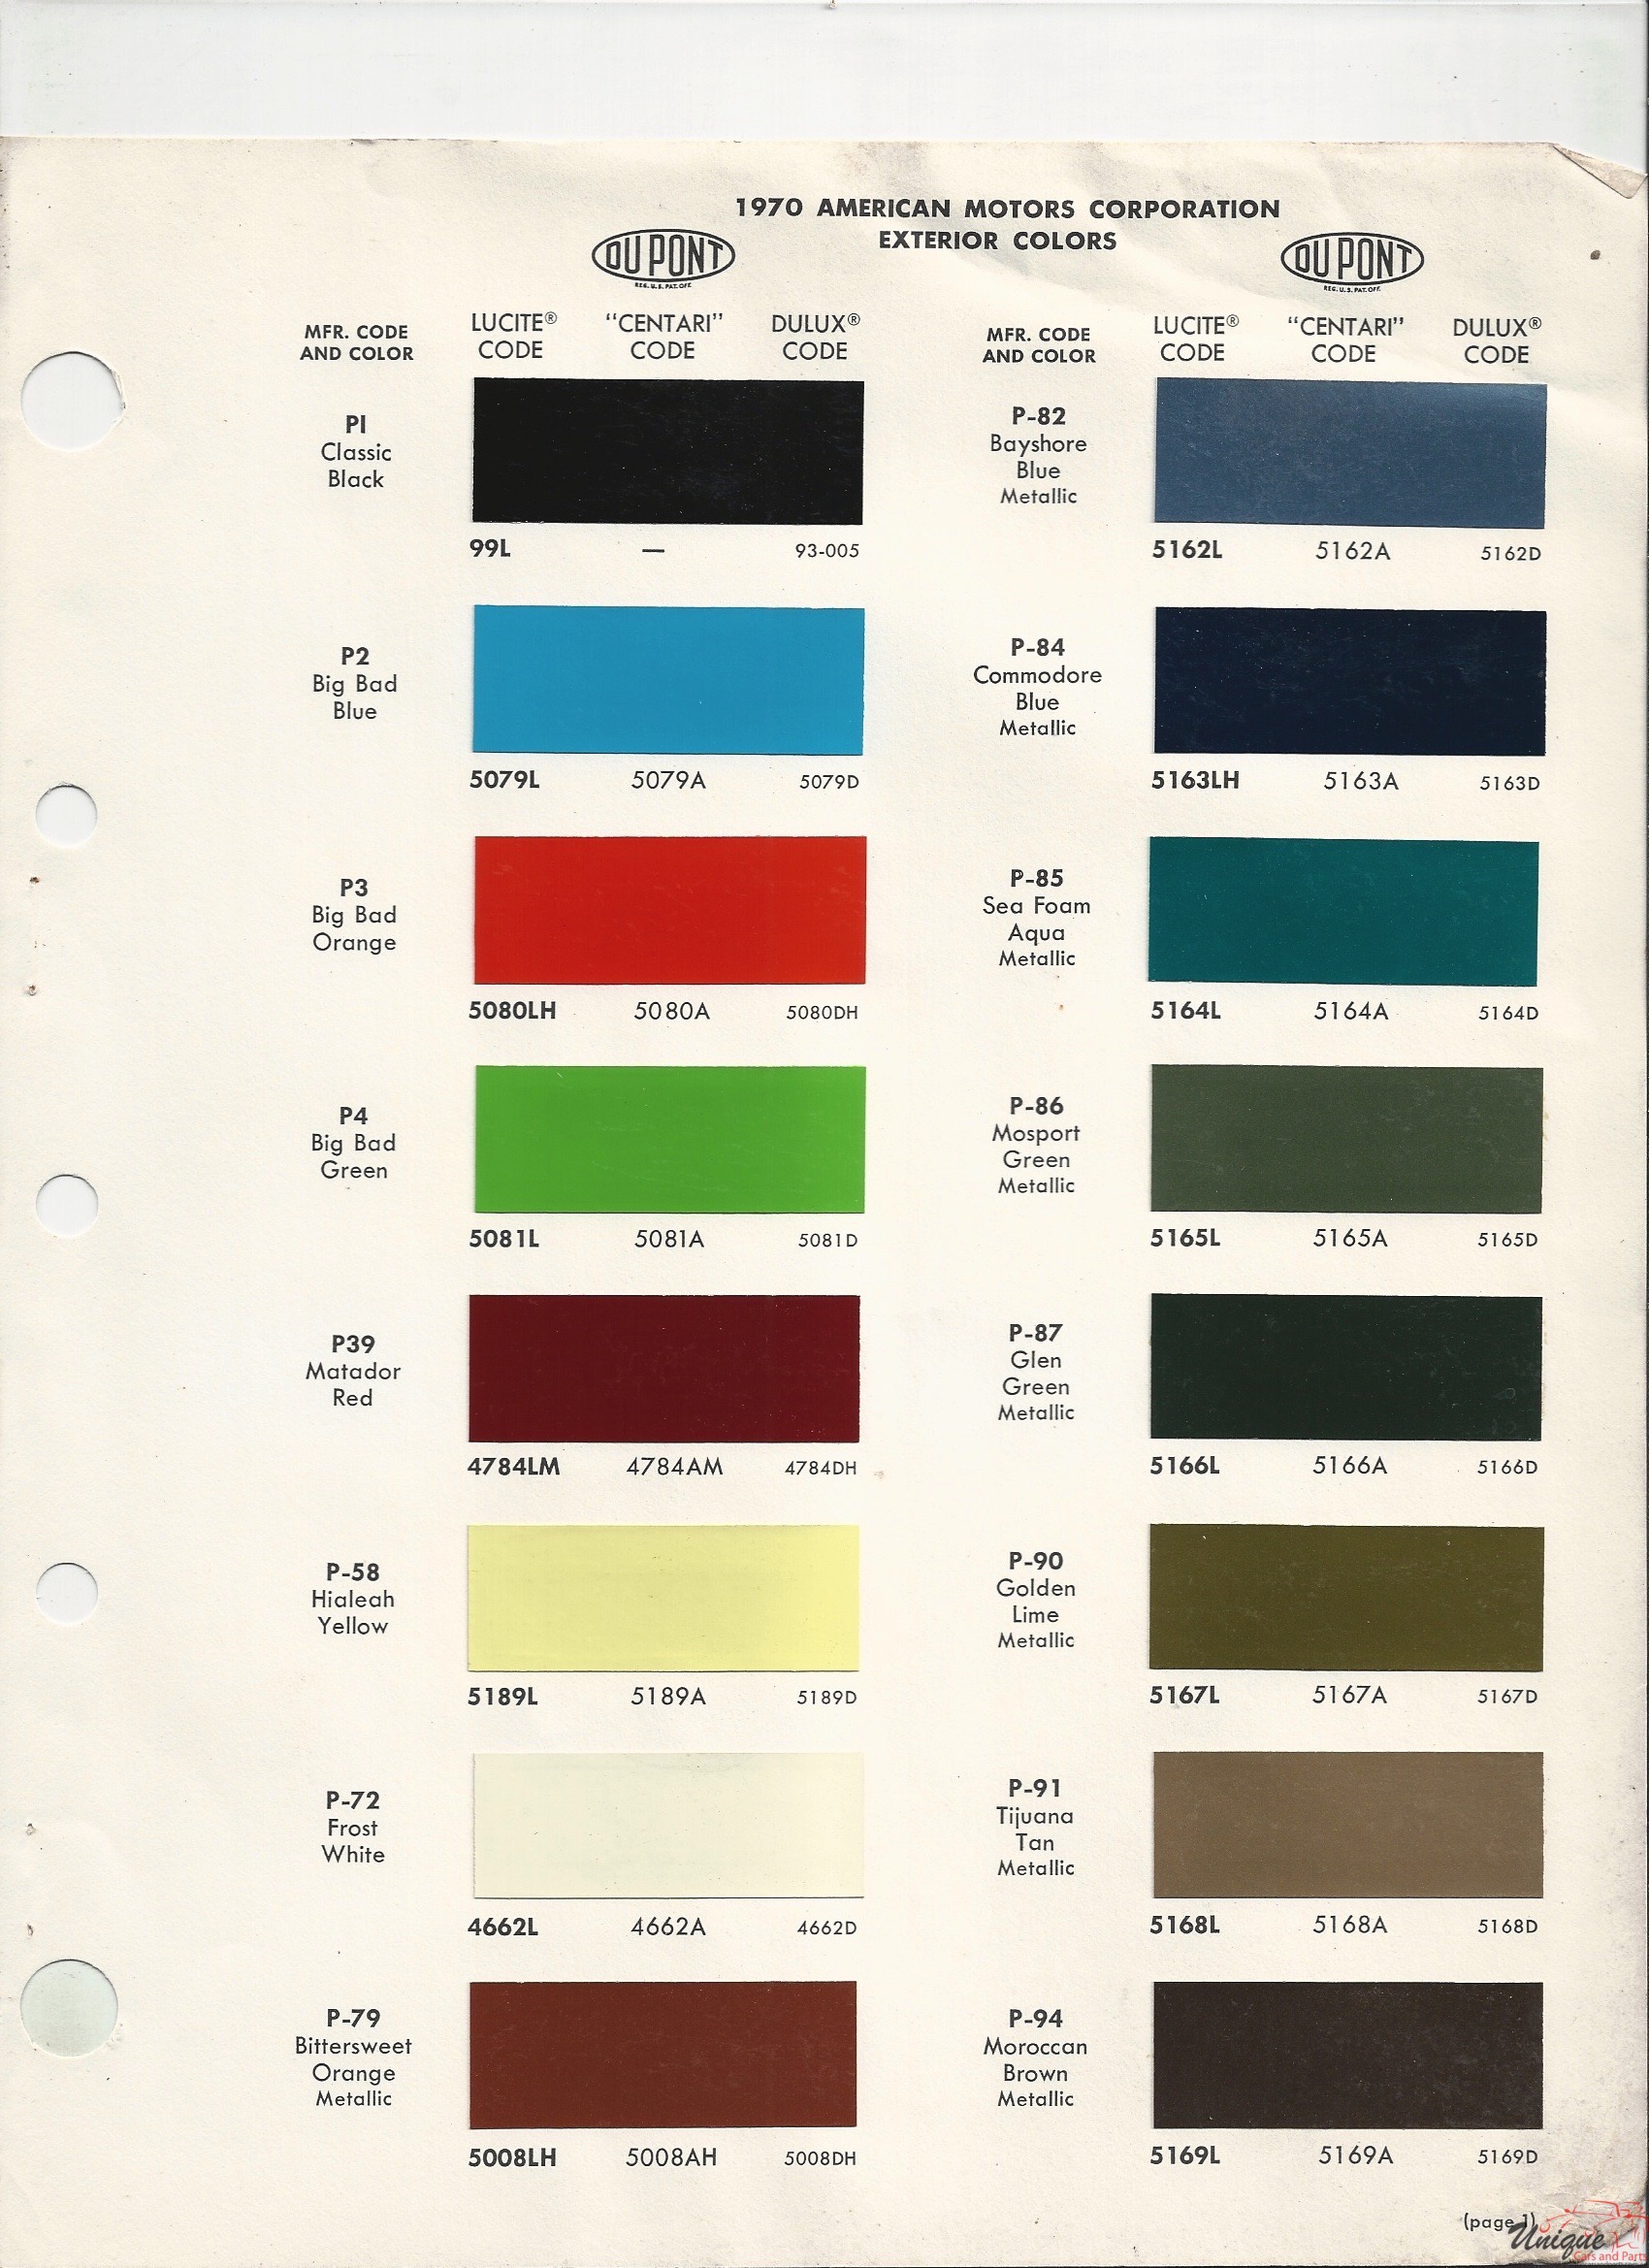 1970 AMC Paint Charts